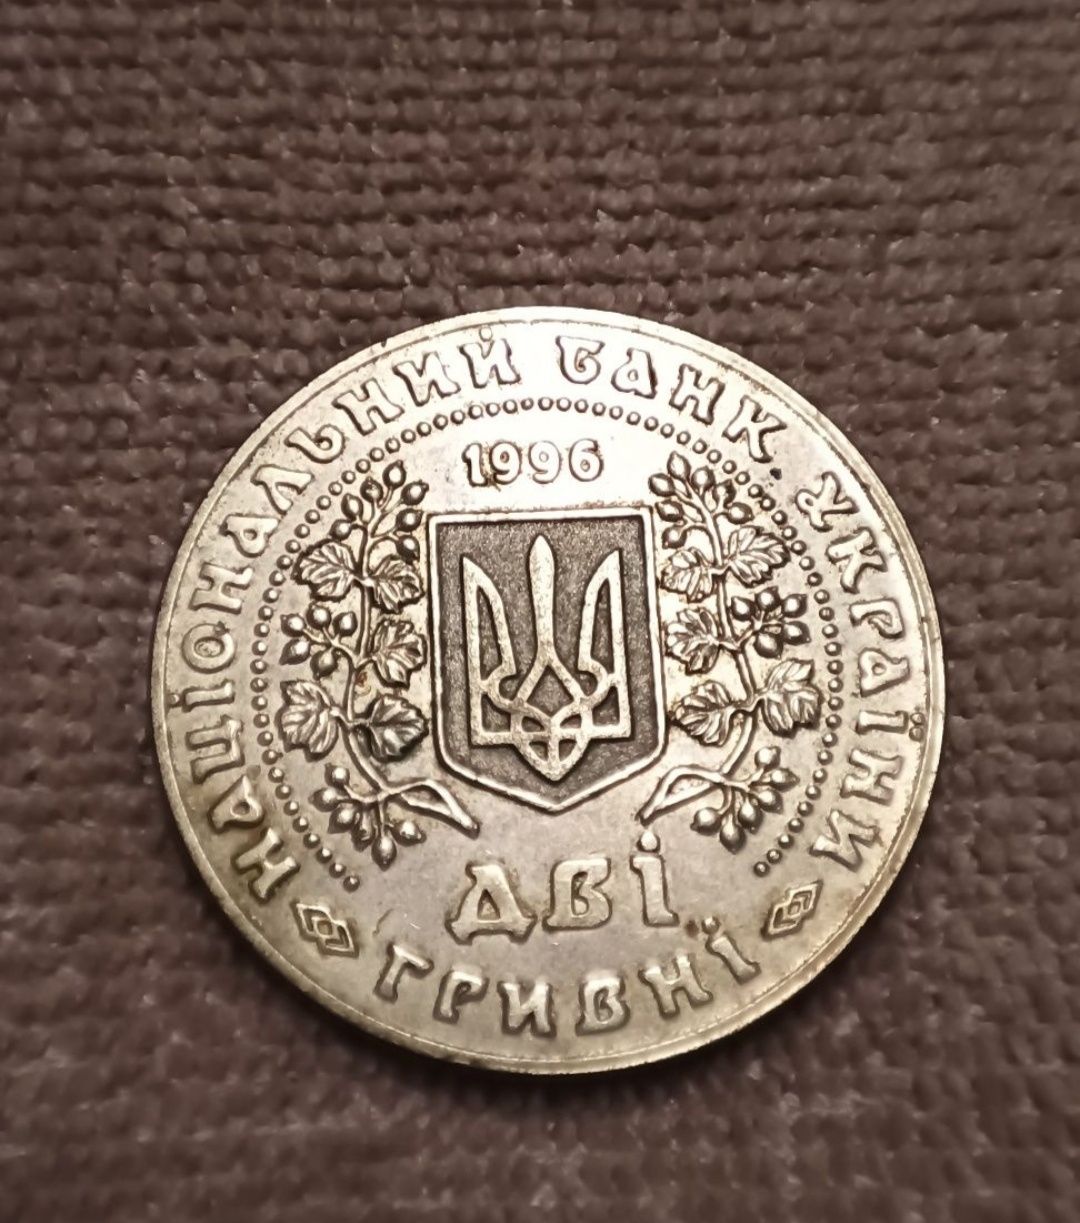 2 гривні 1996 року рідка монета колекційна